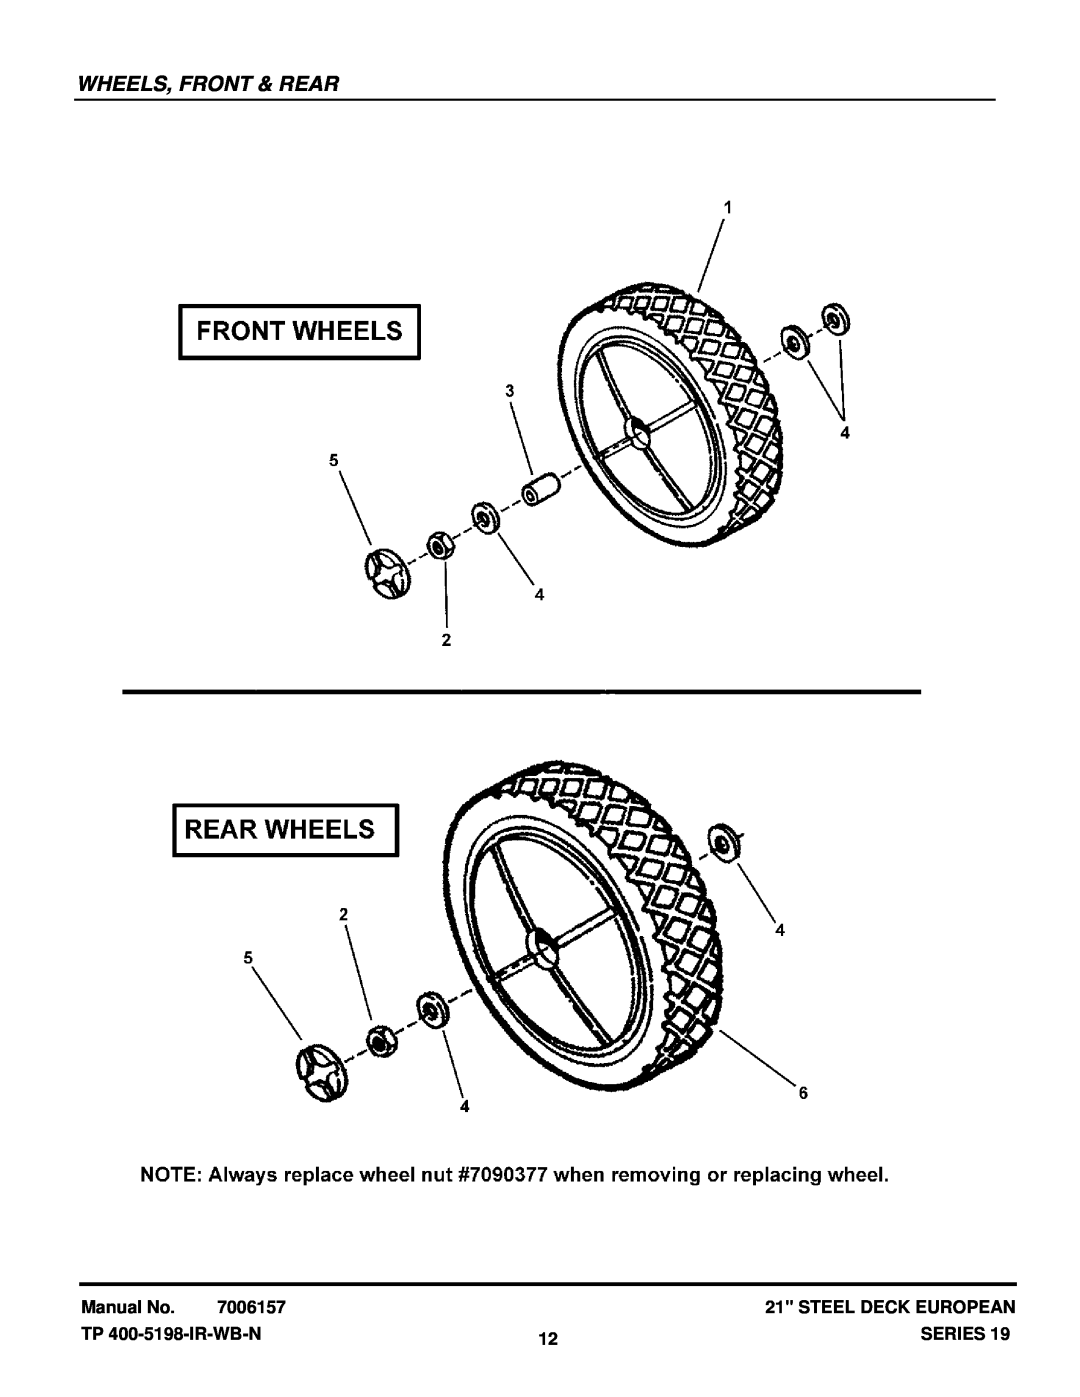 Snapper EP216751BV manual Wheels, Front & Rear, Manual No, 7006157, Steel Deck European, TP 400-5198-IR-WB-N, Series 